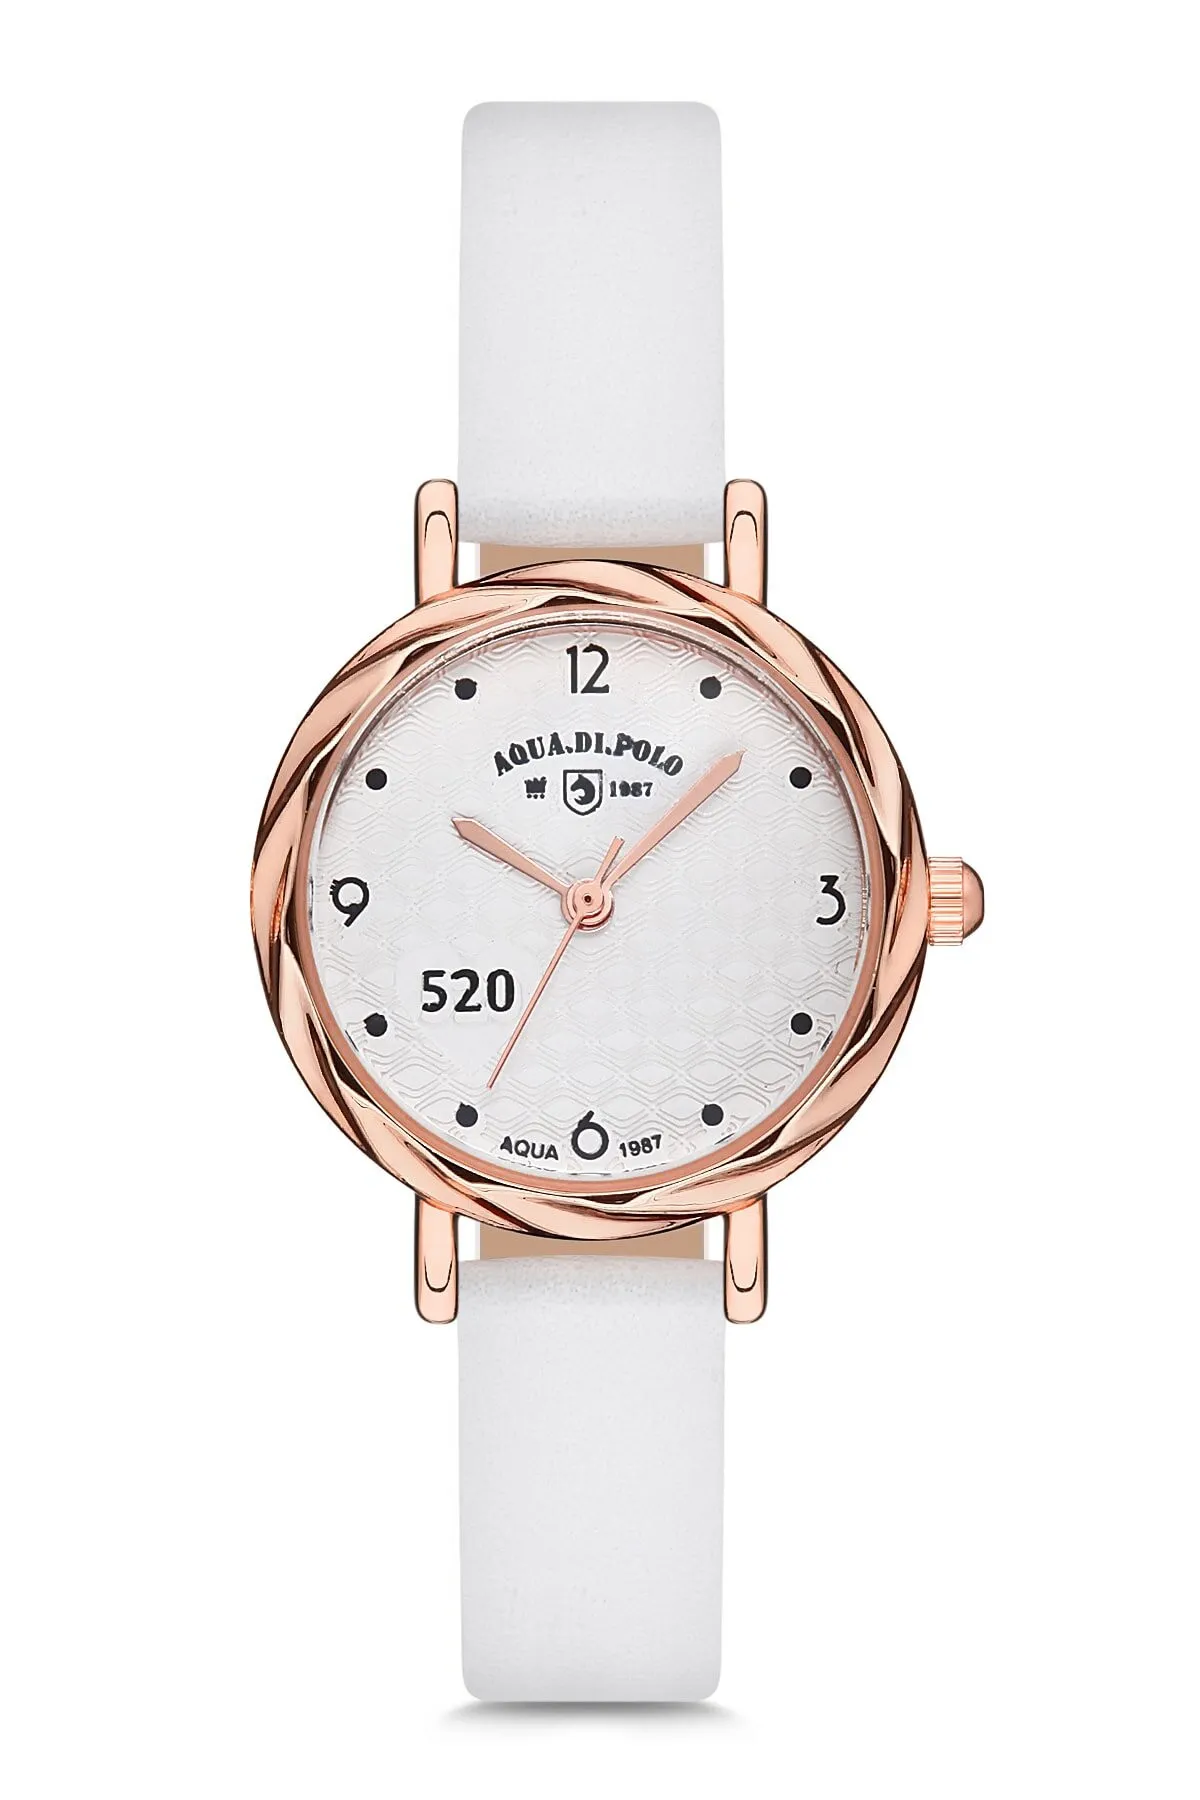 Кожаные женские наручные часы Di Polo apwa031001#1